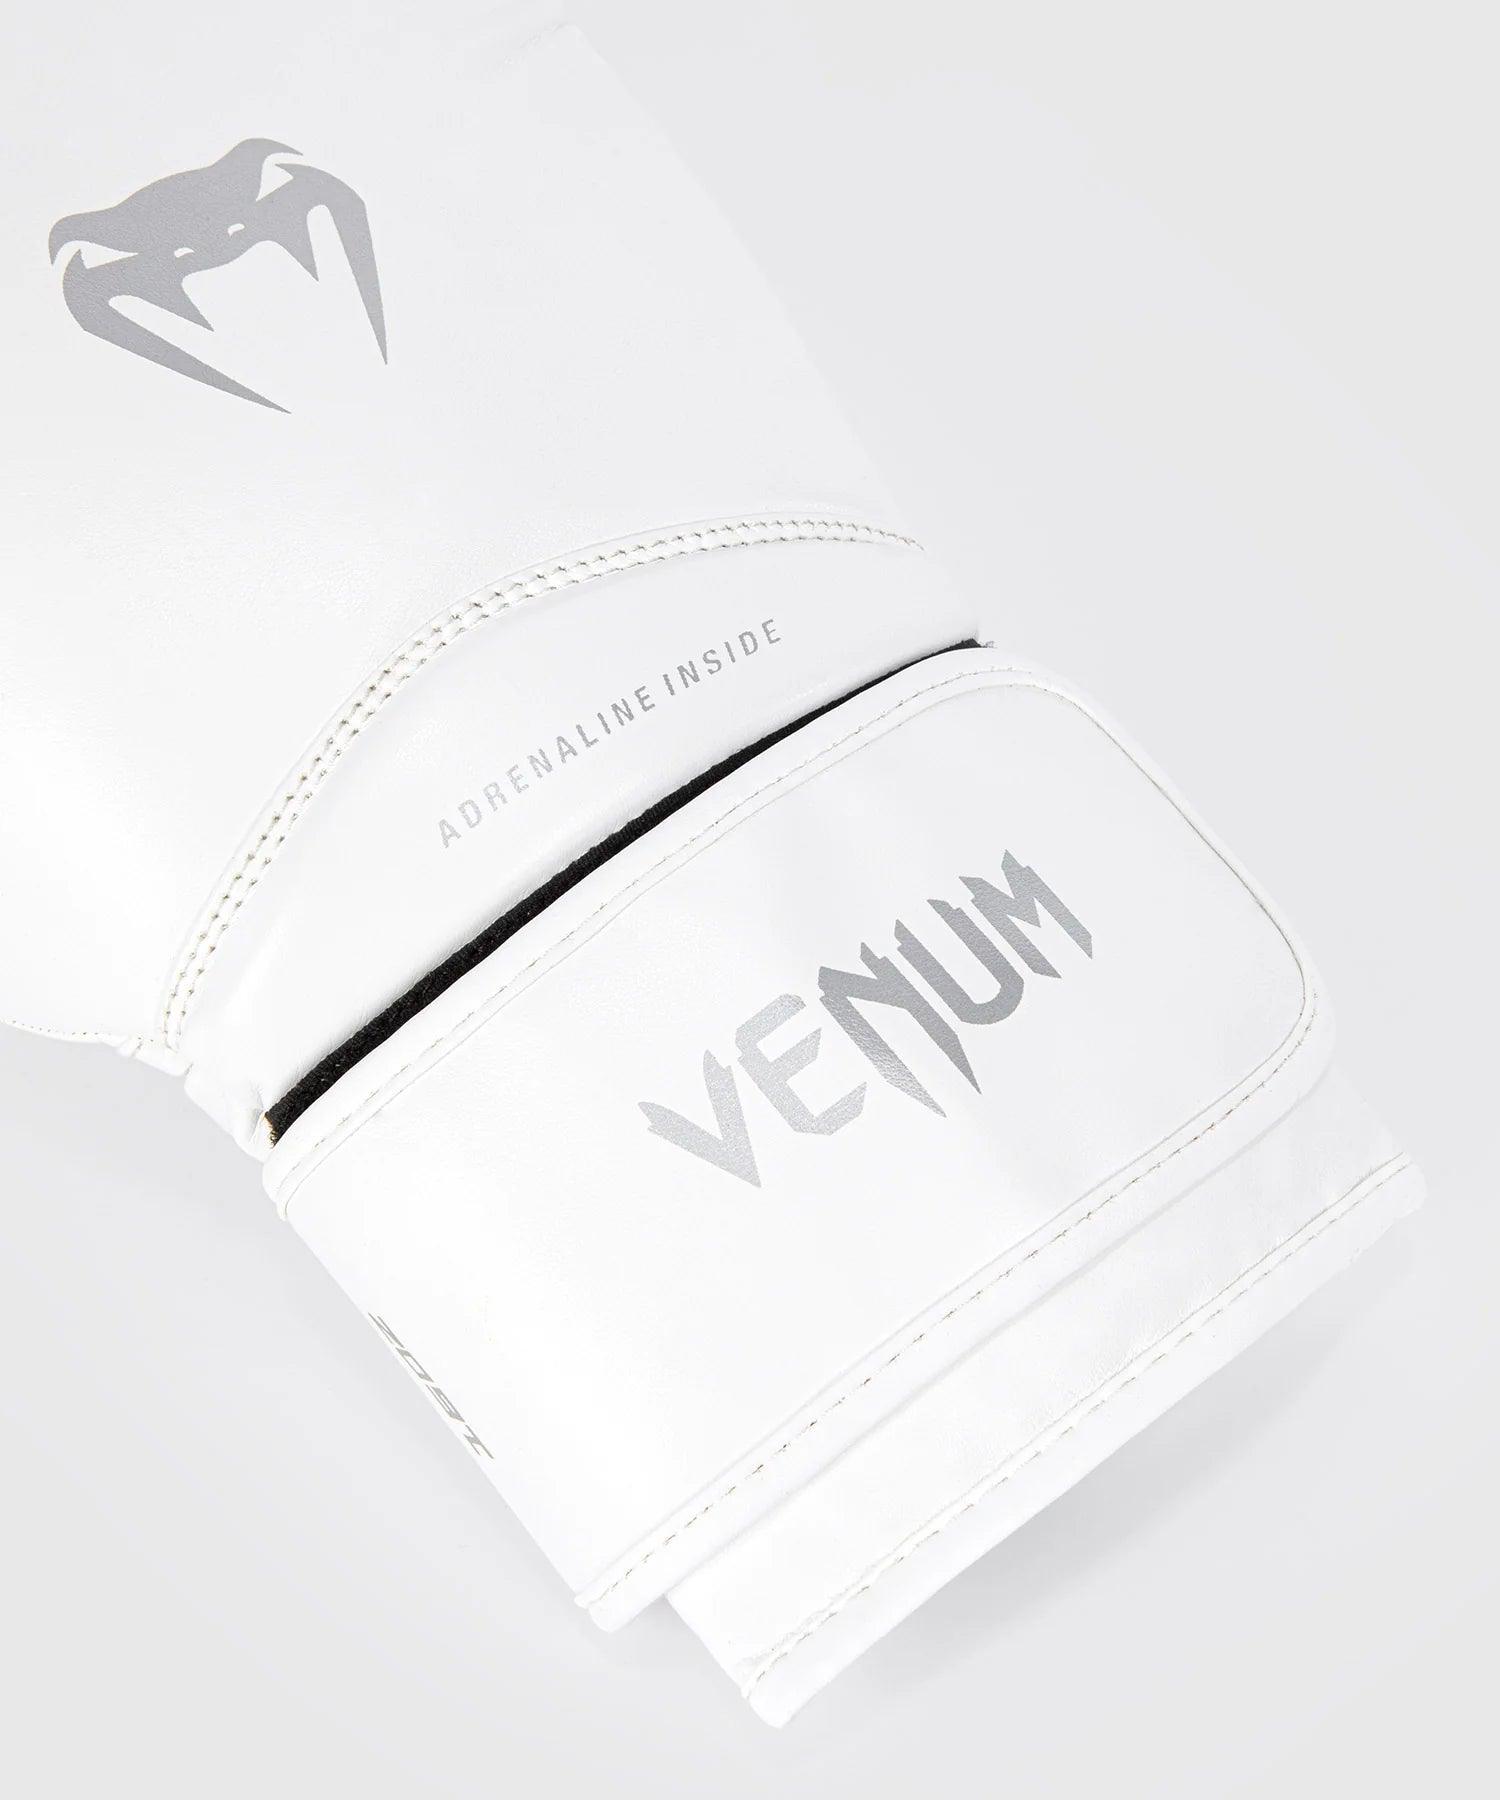 Gants de Boxe Venum Contender 1.5 - Blanc/Argent